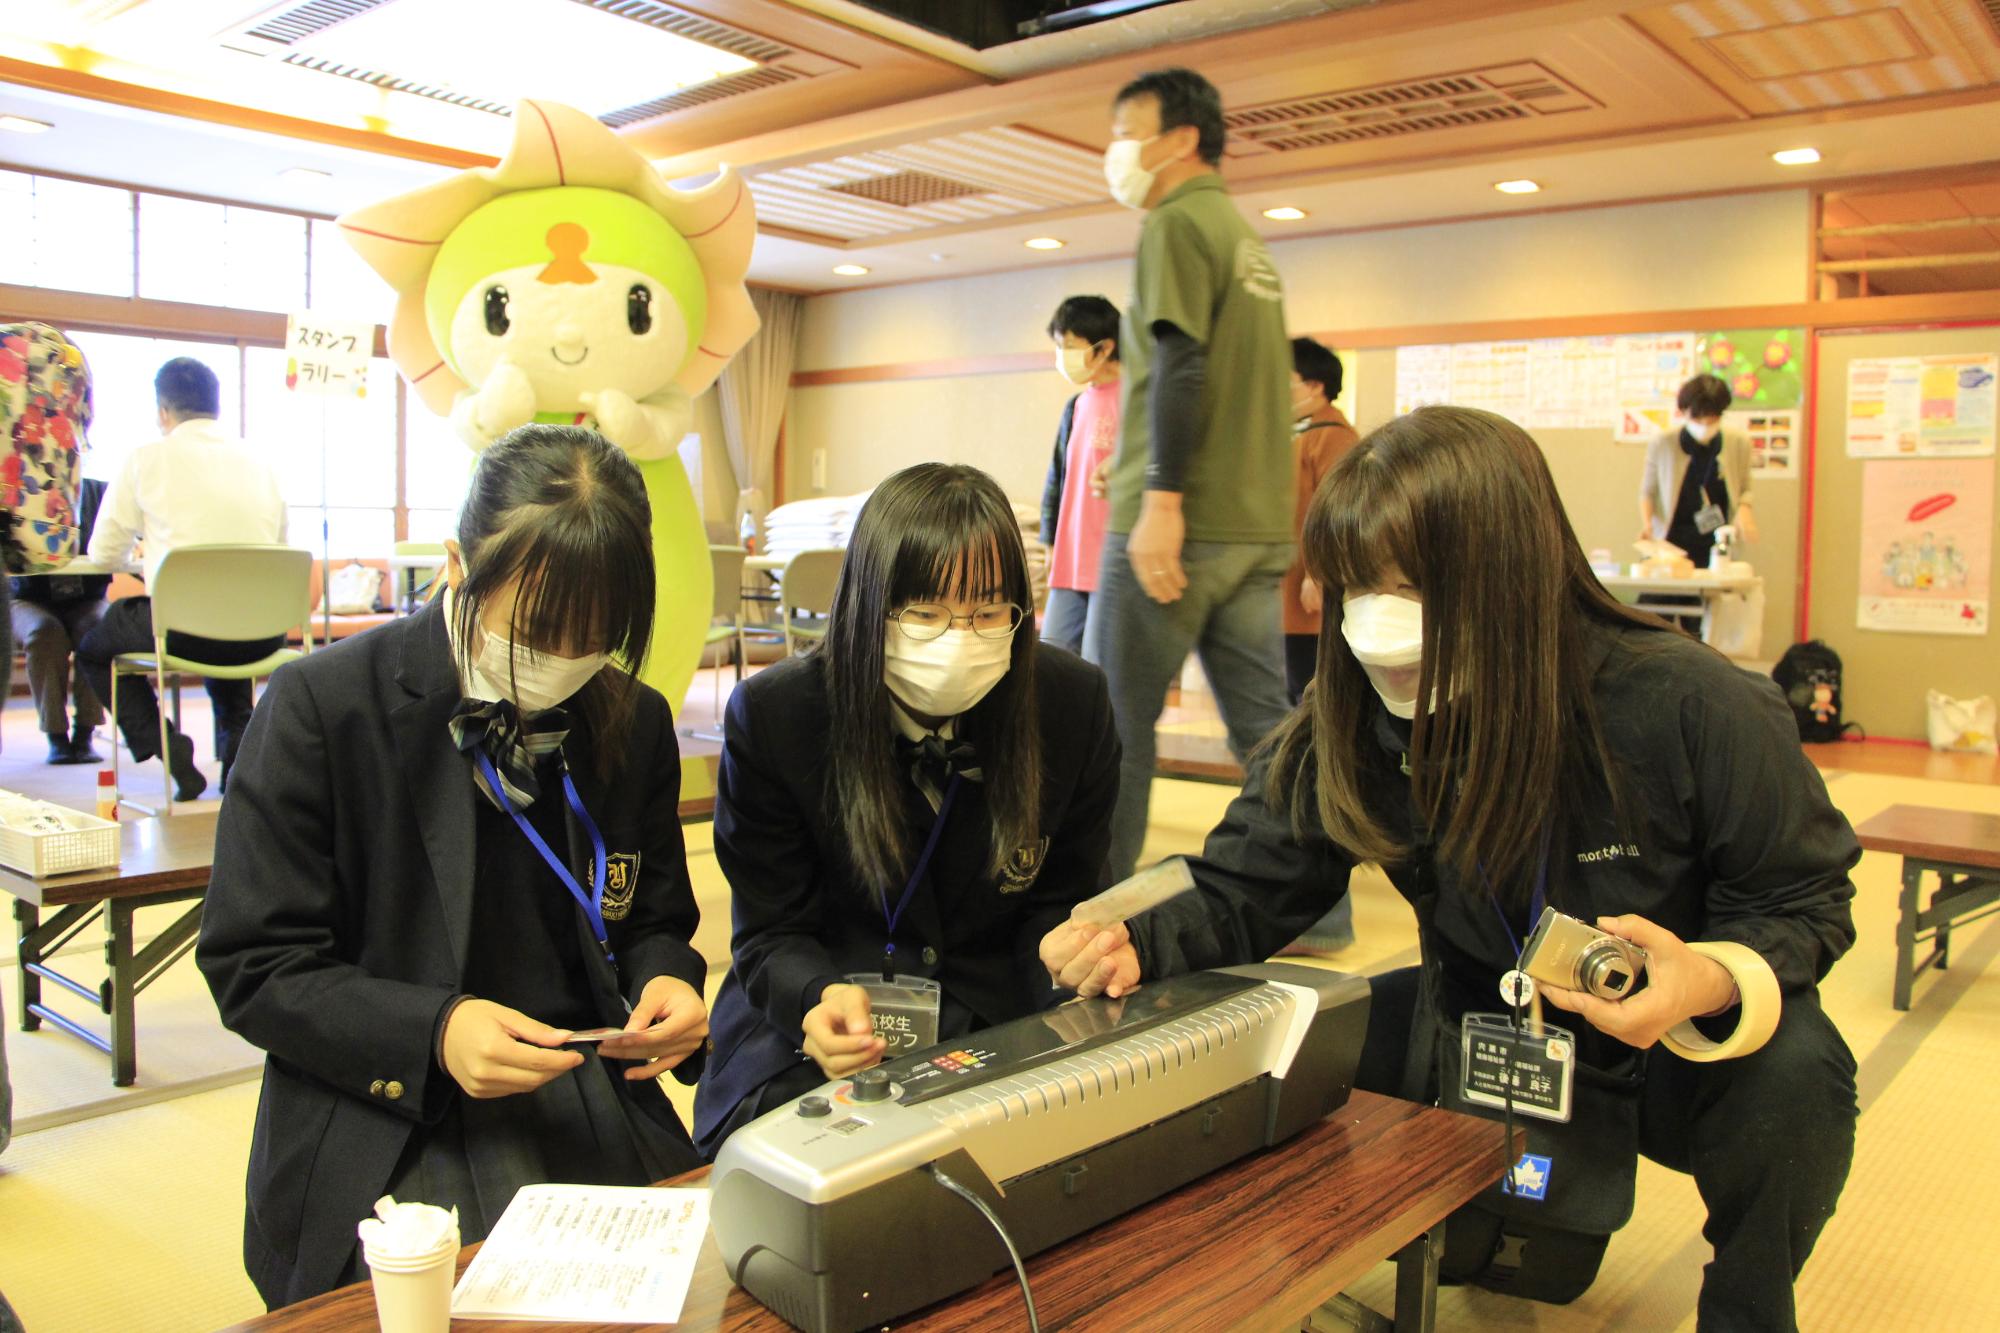 宍粟市手話フェスタの指文字コーナーでボランティアとして参加した兵庫県立山崎高校の生徒らが職員と一緒に来場者のカードを作成している写真